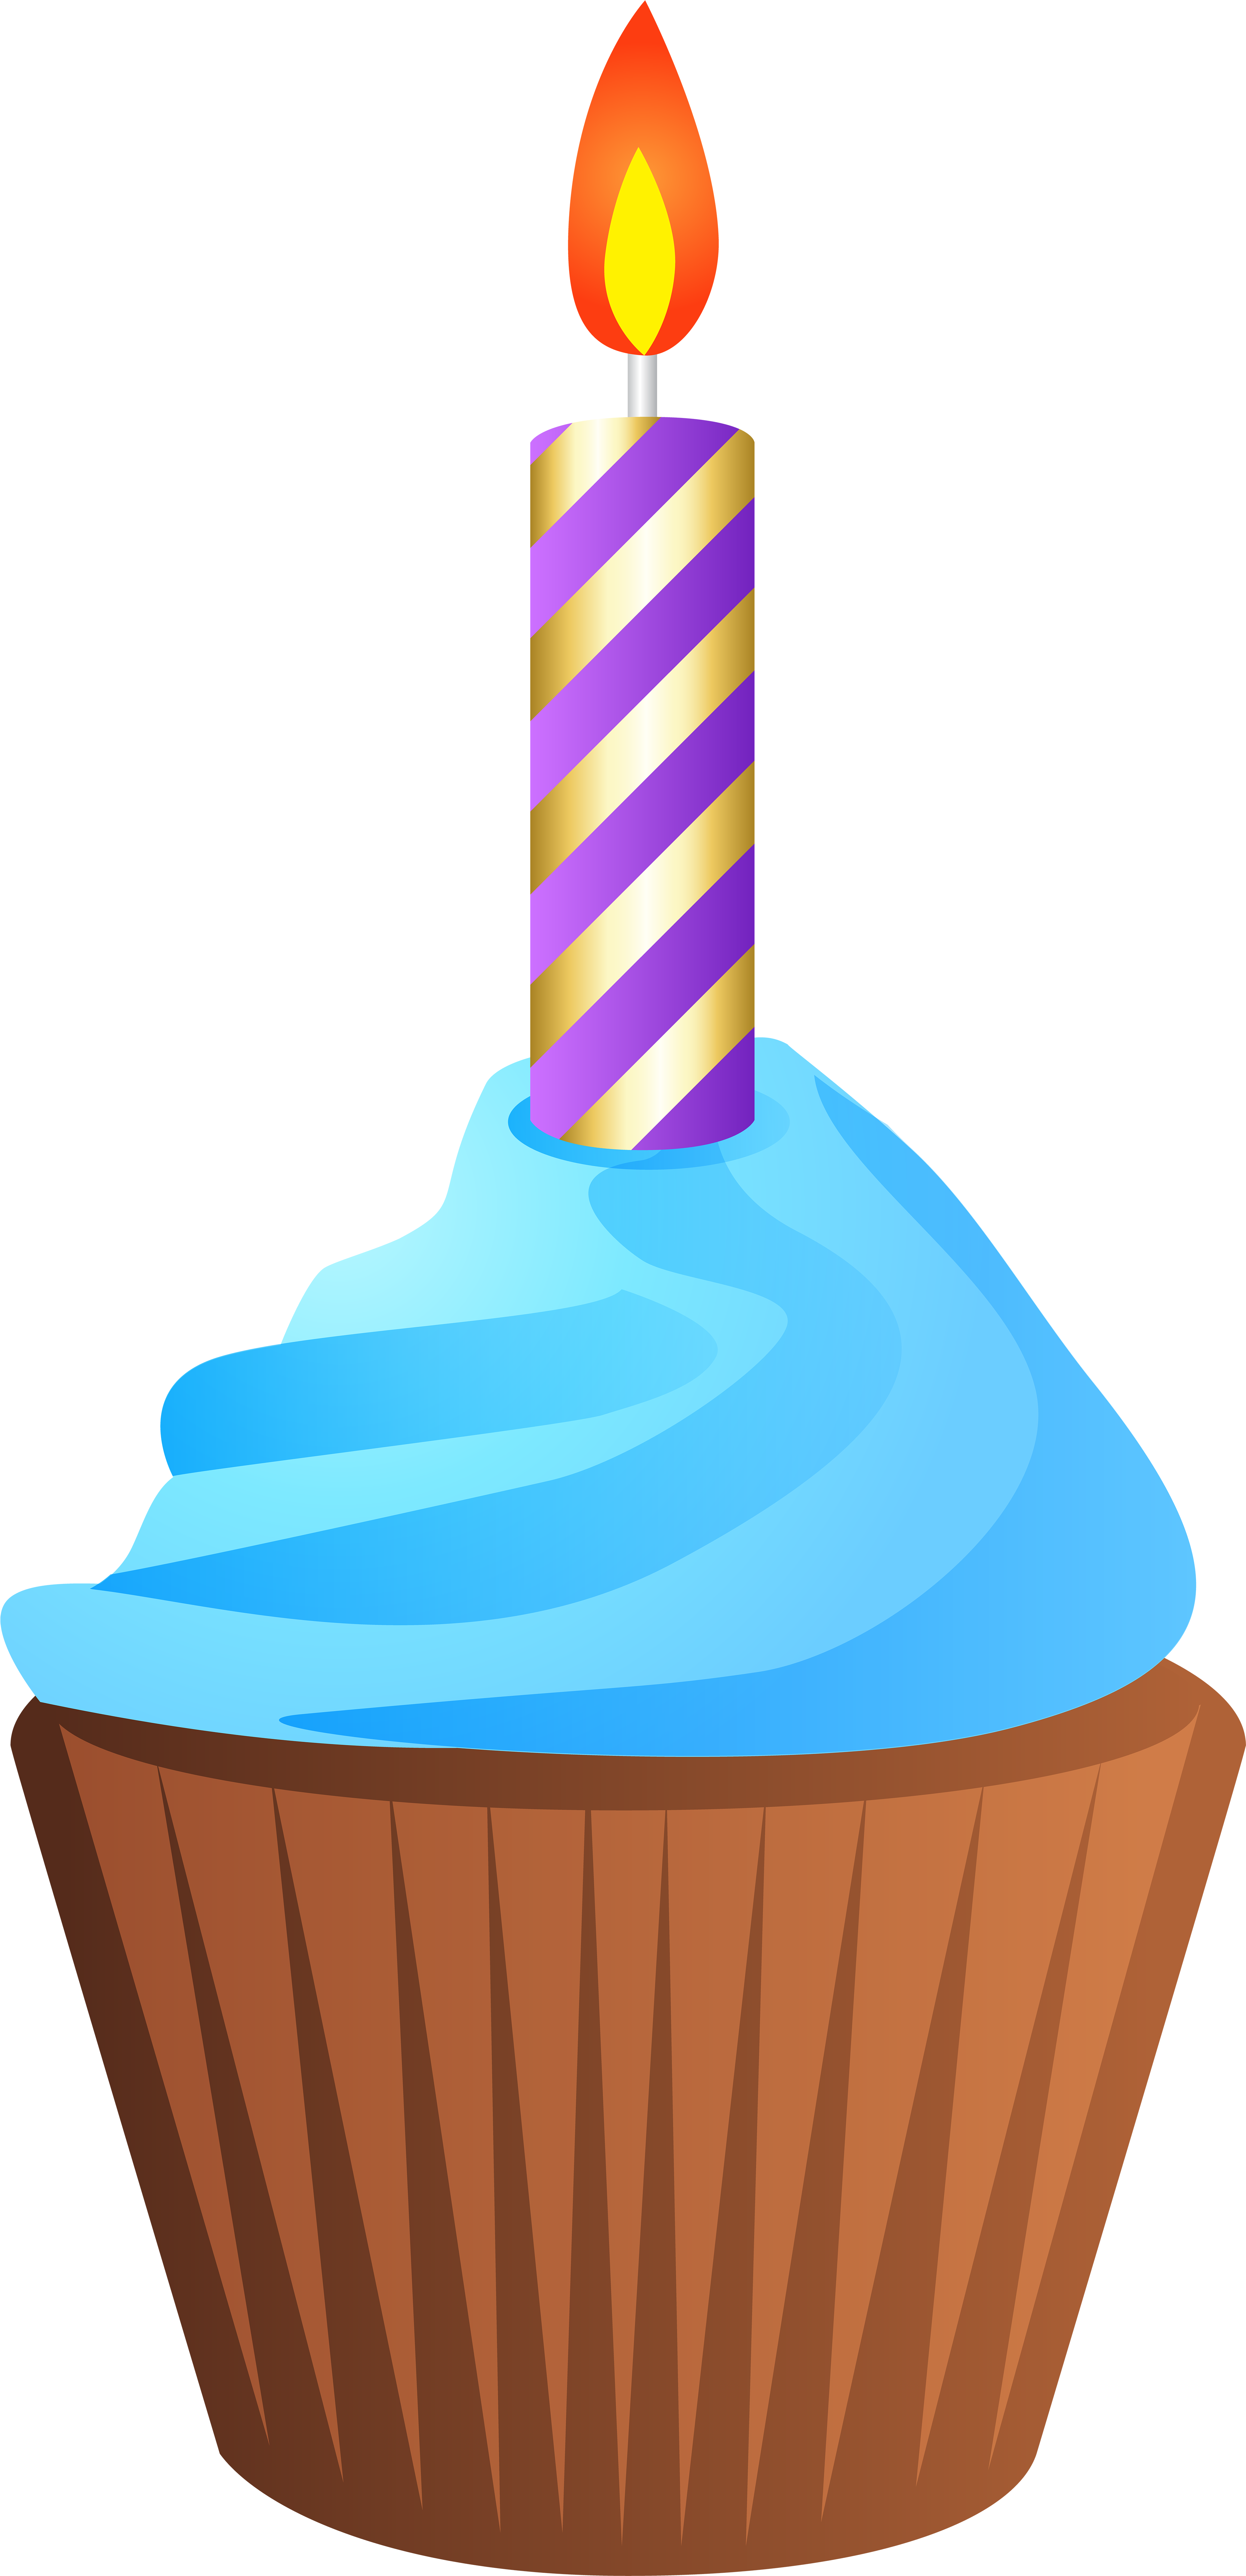 Birthday Cake Muffin Cupcake Clip Art - Birthday Cake Muffin Cupcake Clip Art (3869x8000)